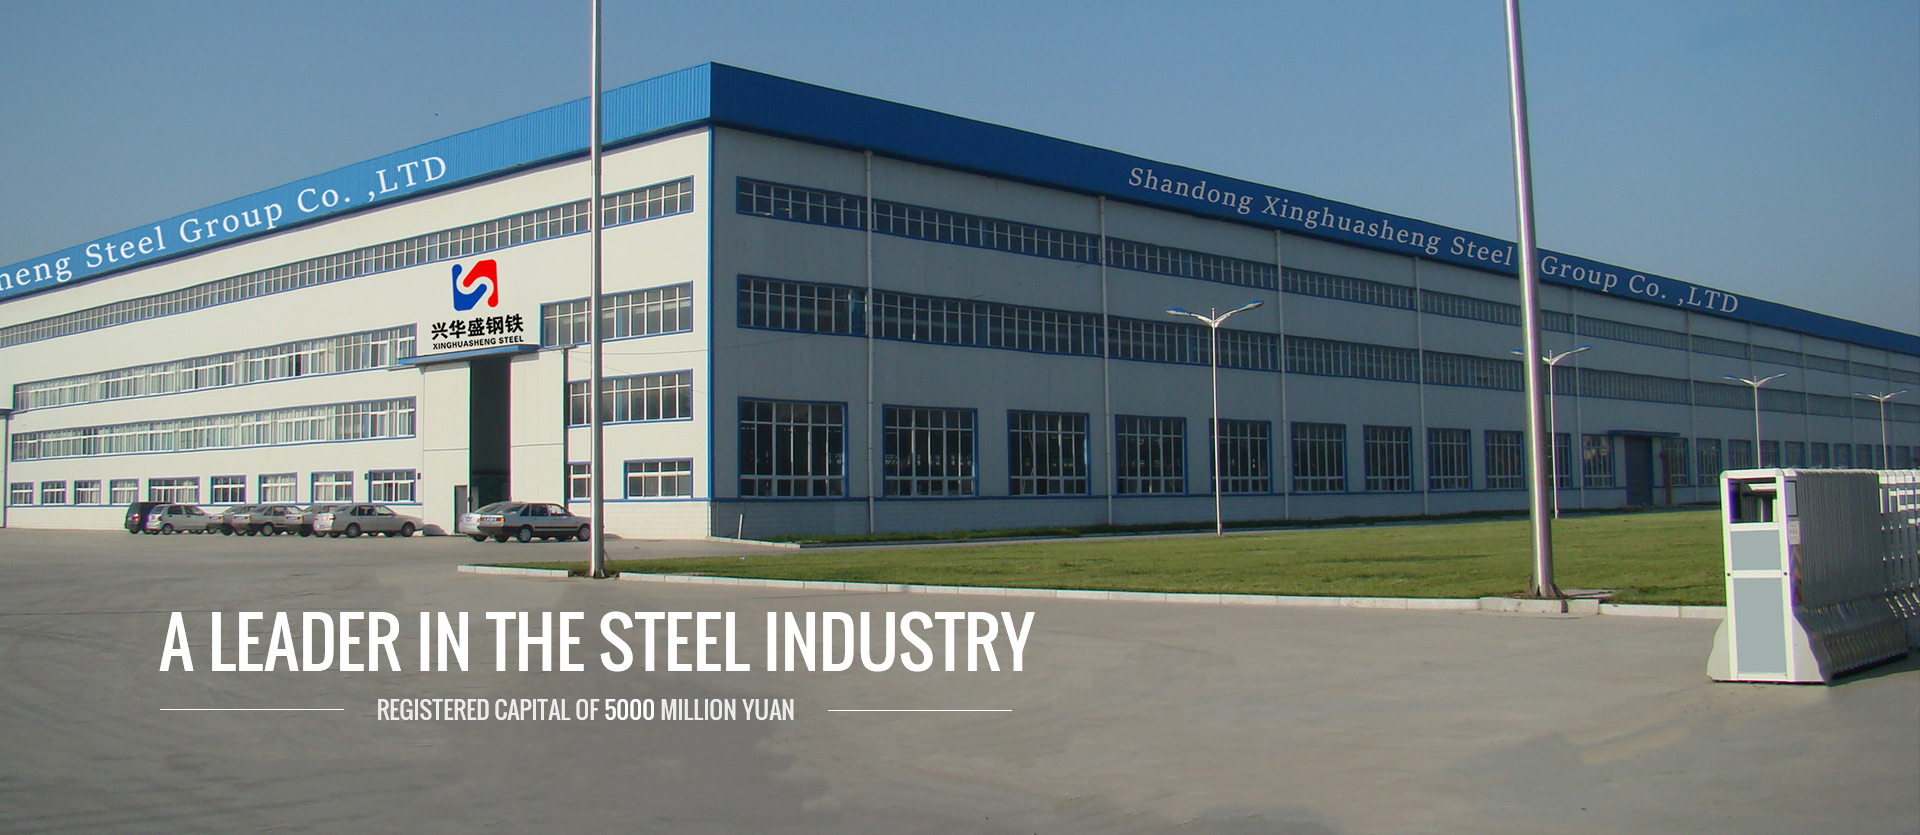 Shandong Xinghuasheng Steel Group Co., LTD